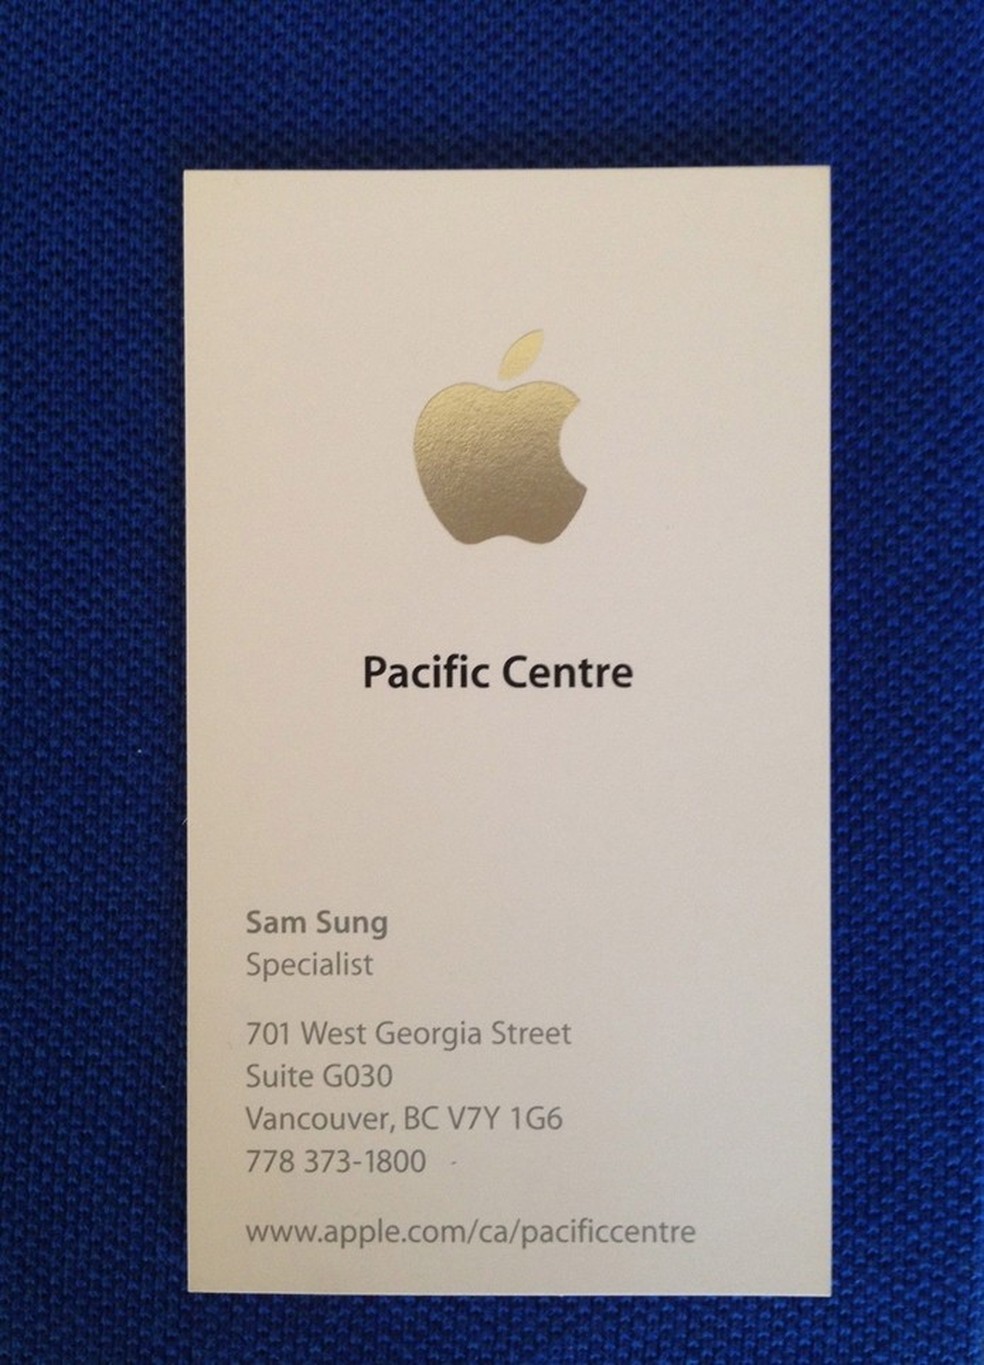 Ex-funcionário da Apple chamado Sam Sung leiloa crachá para a caridade